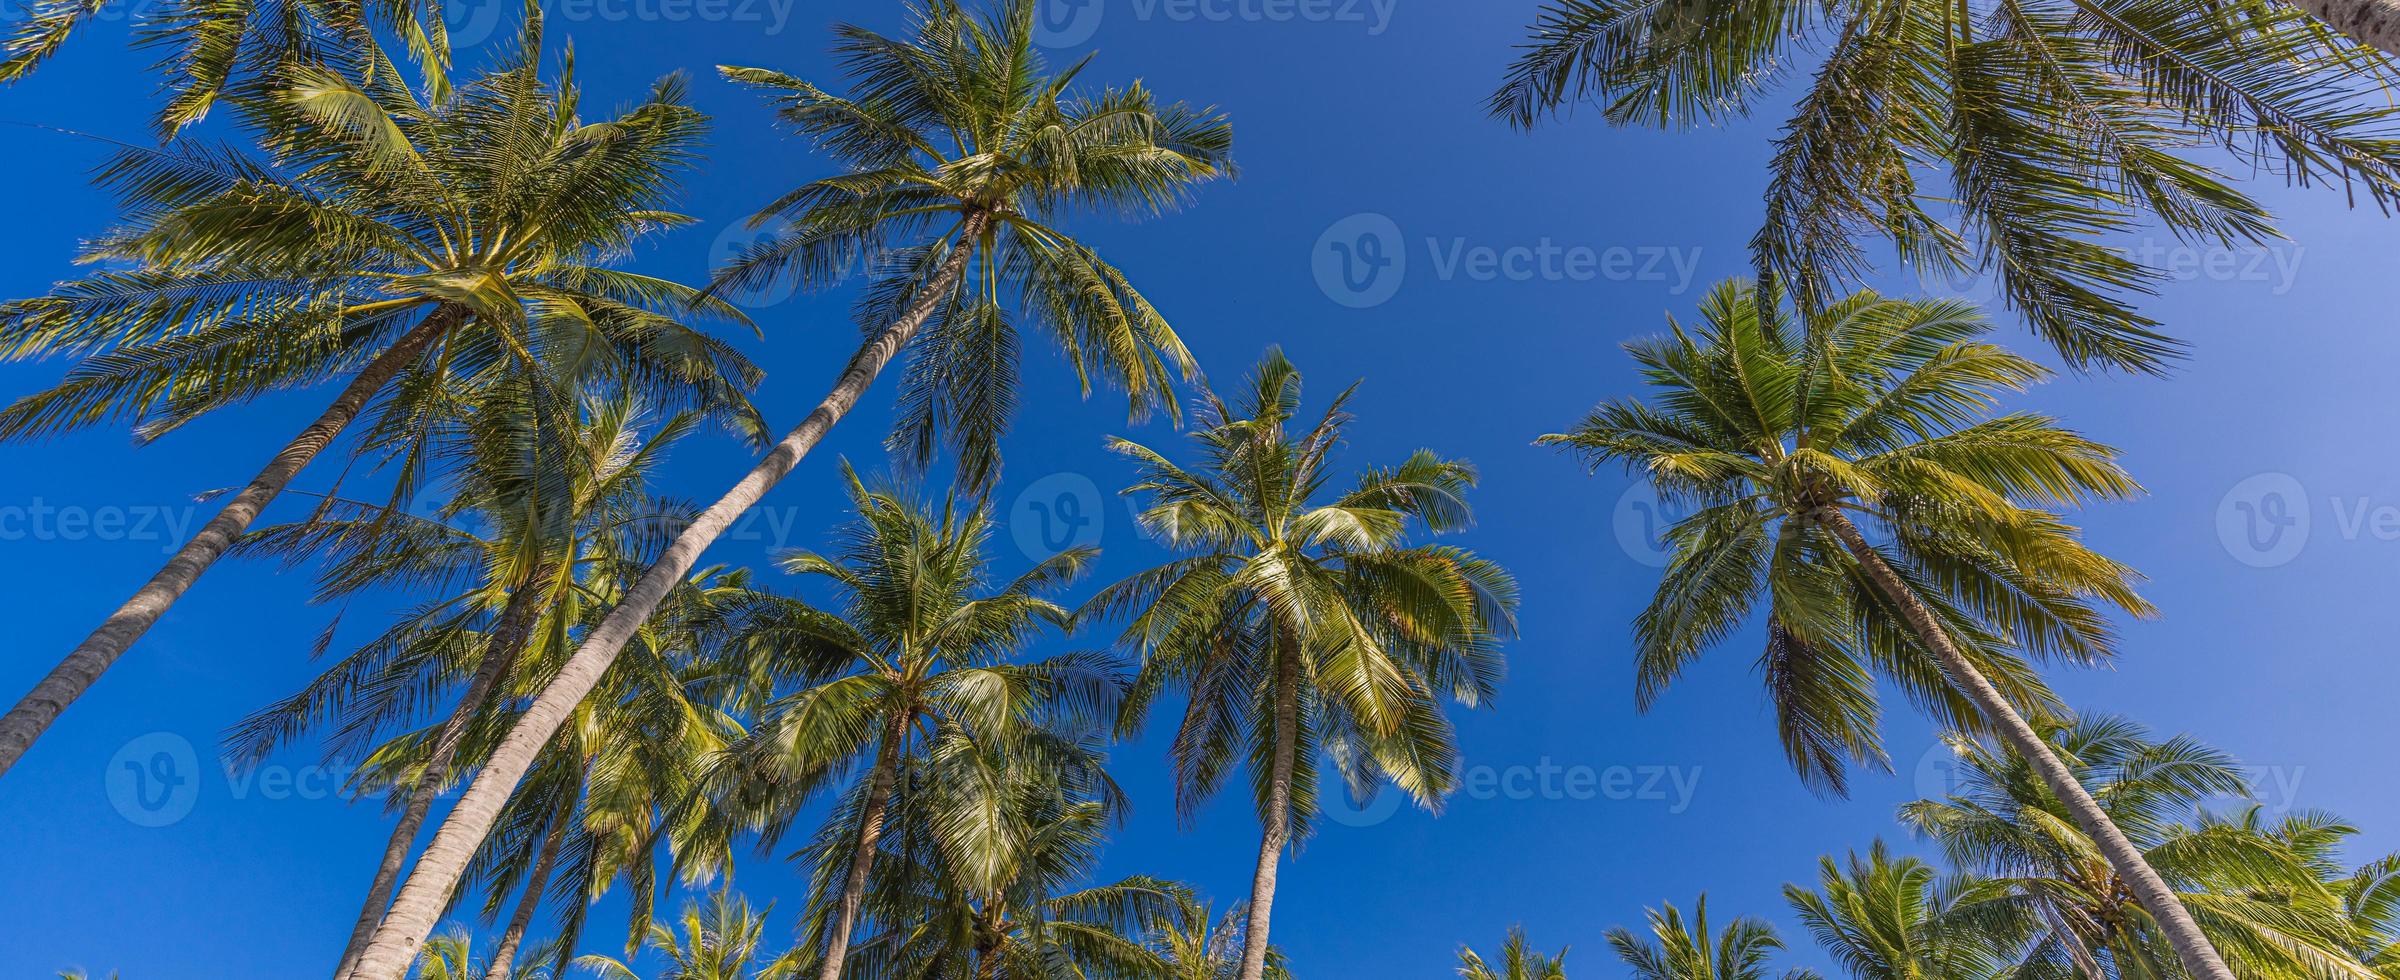 palmeiras com céu azul ensolarado. paisagem exótica da natureza do verão, panorama da floresta tropical. vista da natureza da ilha. relaxamento bela paisagem panorâmica. foto